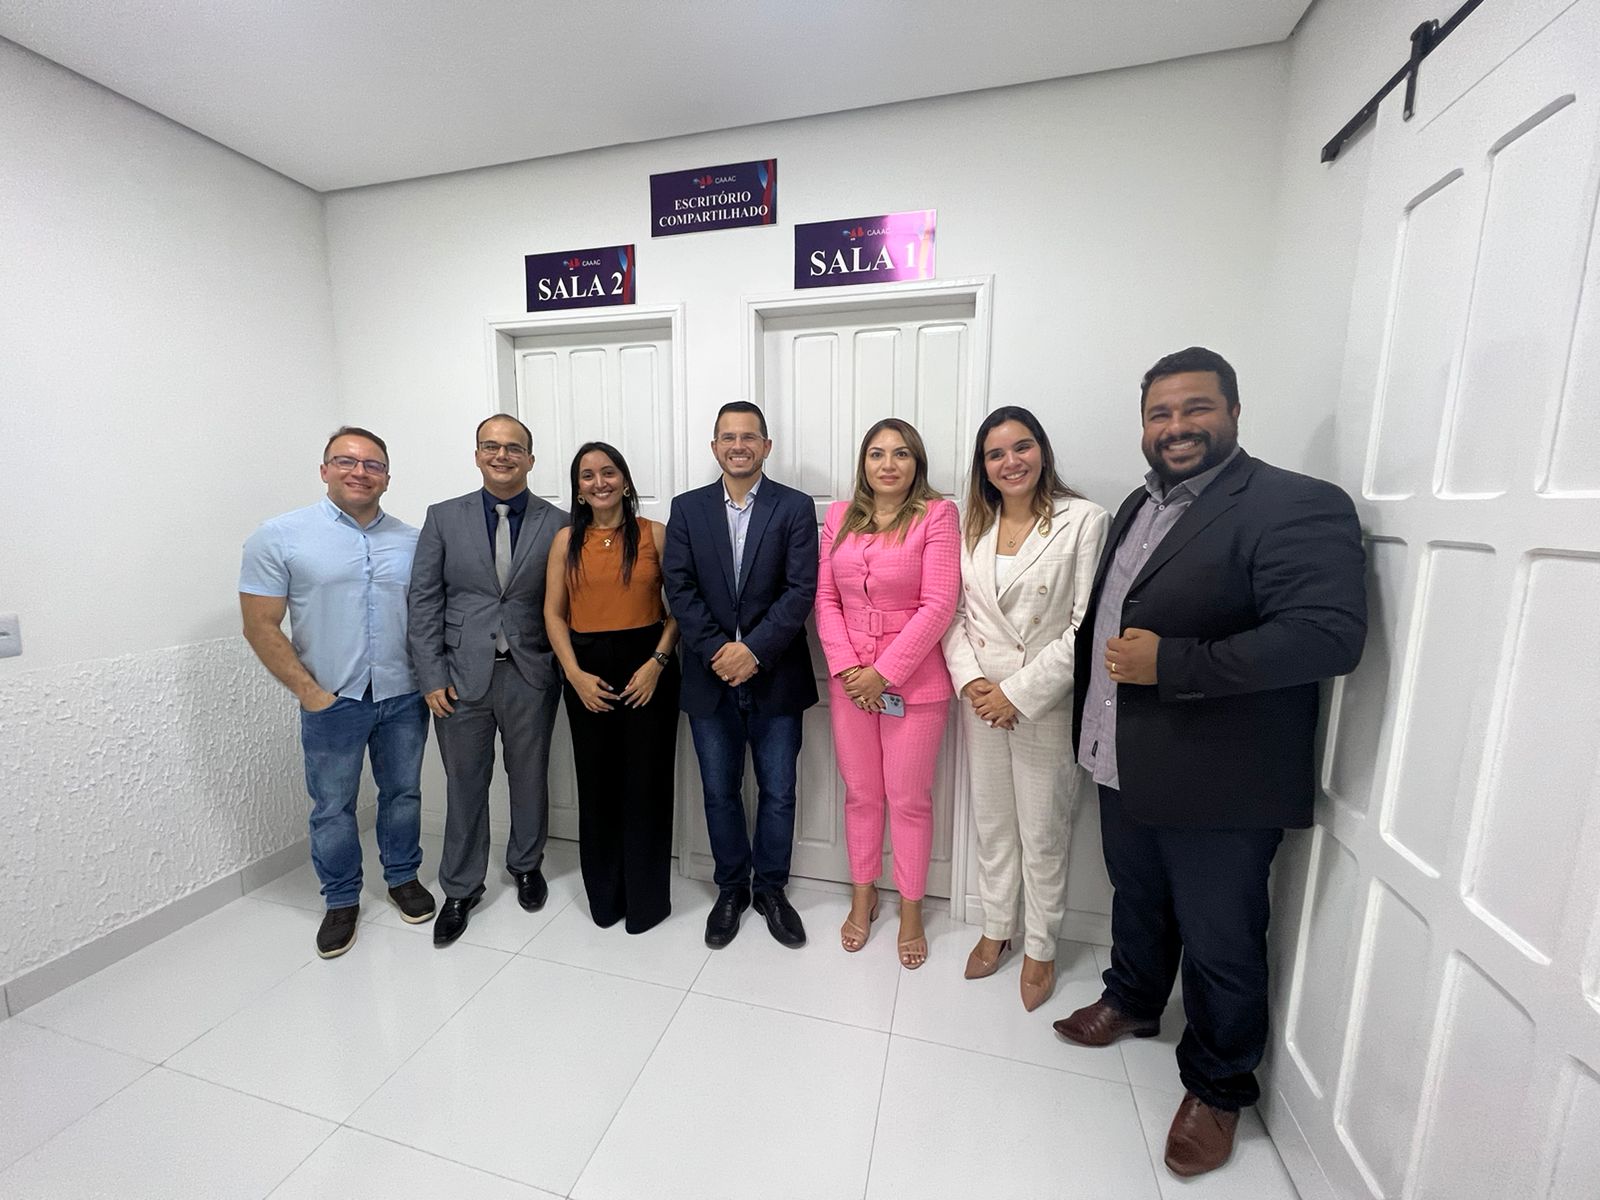 OAB/AC e CAAAC inauguram Sede Campestre da Advocacia Acreana – Acre Notícias